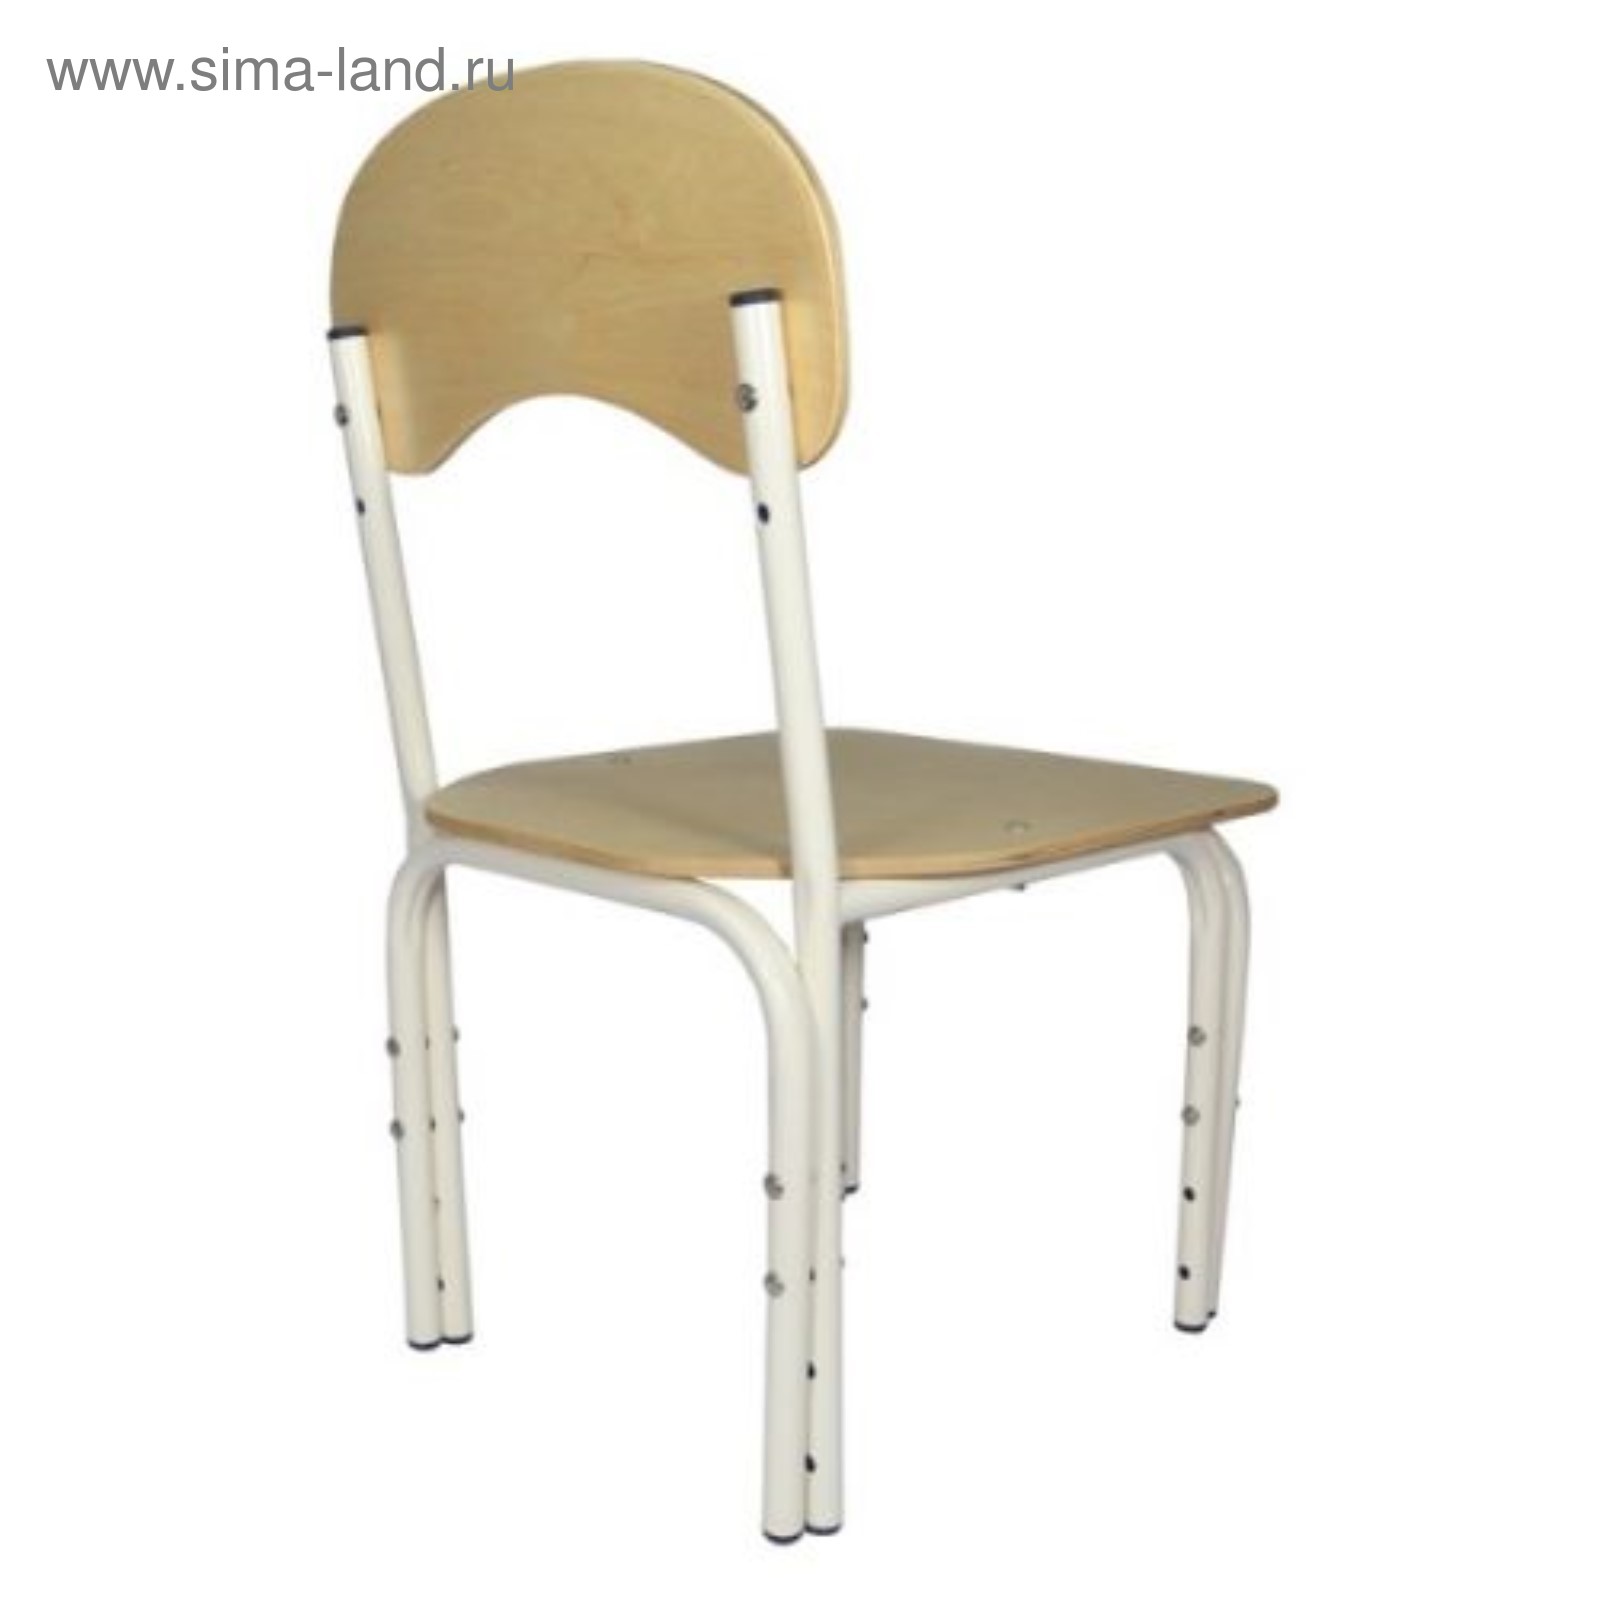 стул регулируемый по высоте мягкий